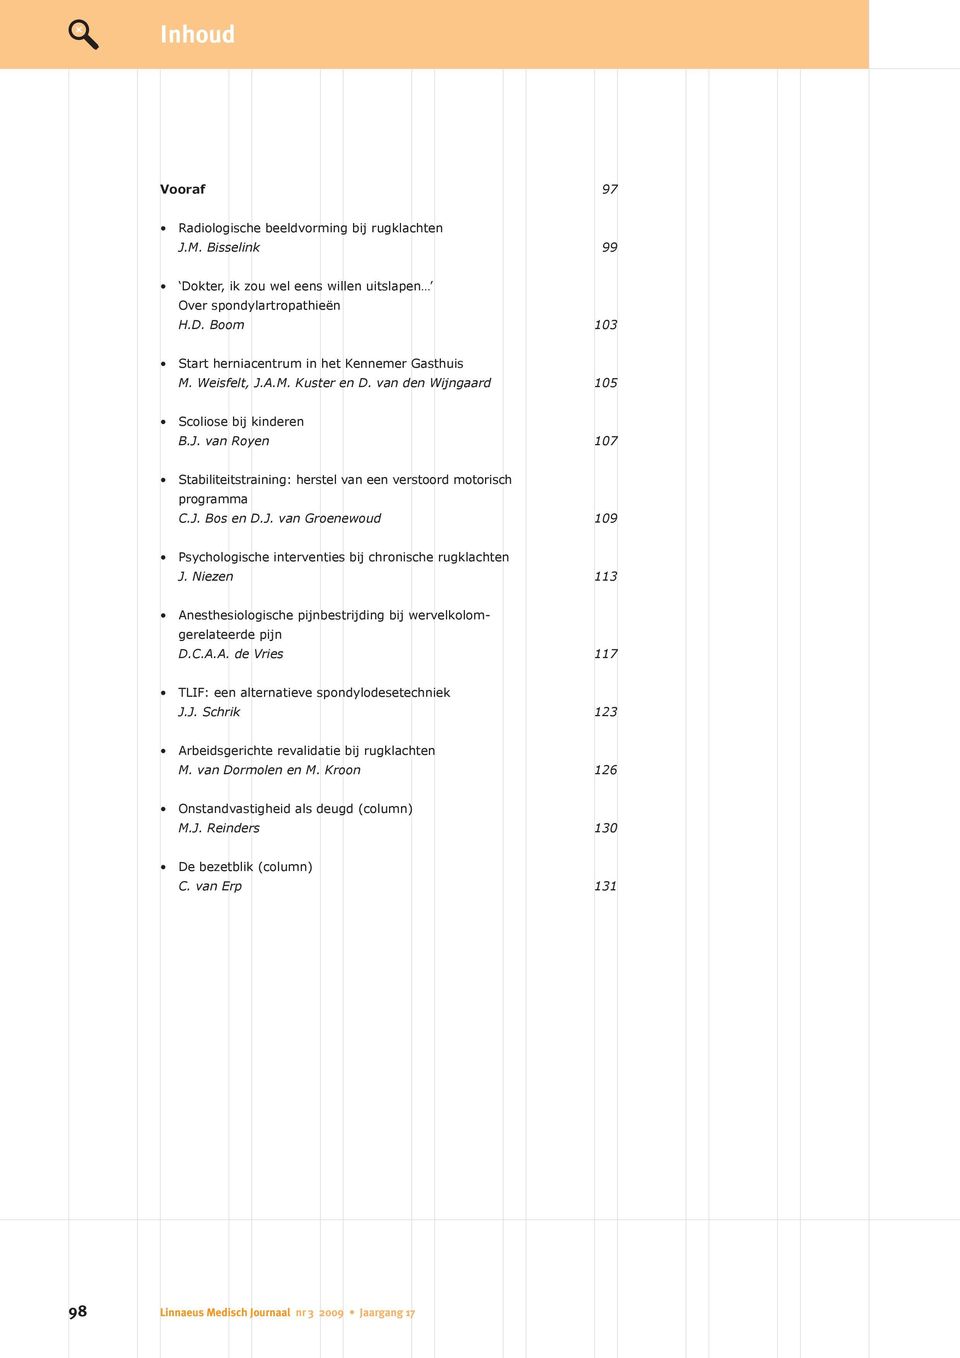 Niezen 113 Anesthesiologische pijnbestrijding bij wervelkolom - gerelateerde pijn D.C.A.A. de Vries 117 TLIF: een alternatieve spondylodesetechniek J.